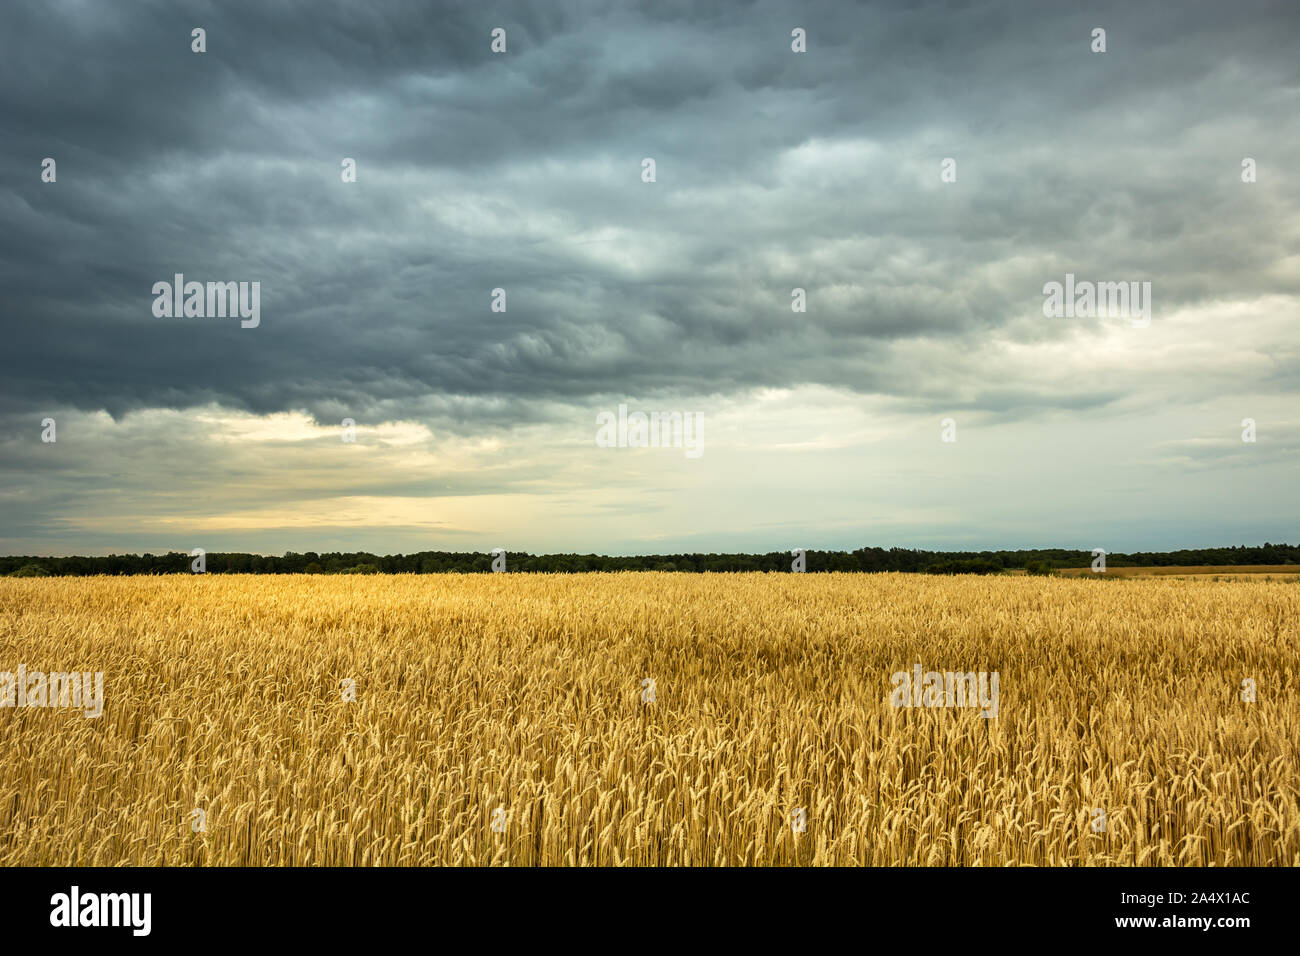 Champ de blé d'or, l'horizon et les nuages gris dans le ciel Banque D'Images